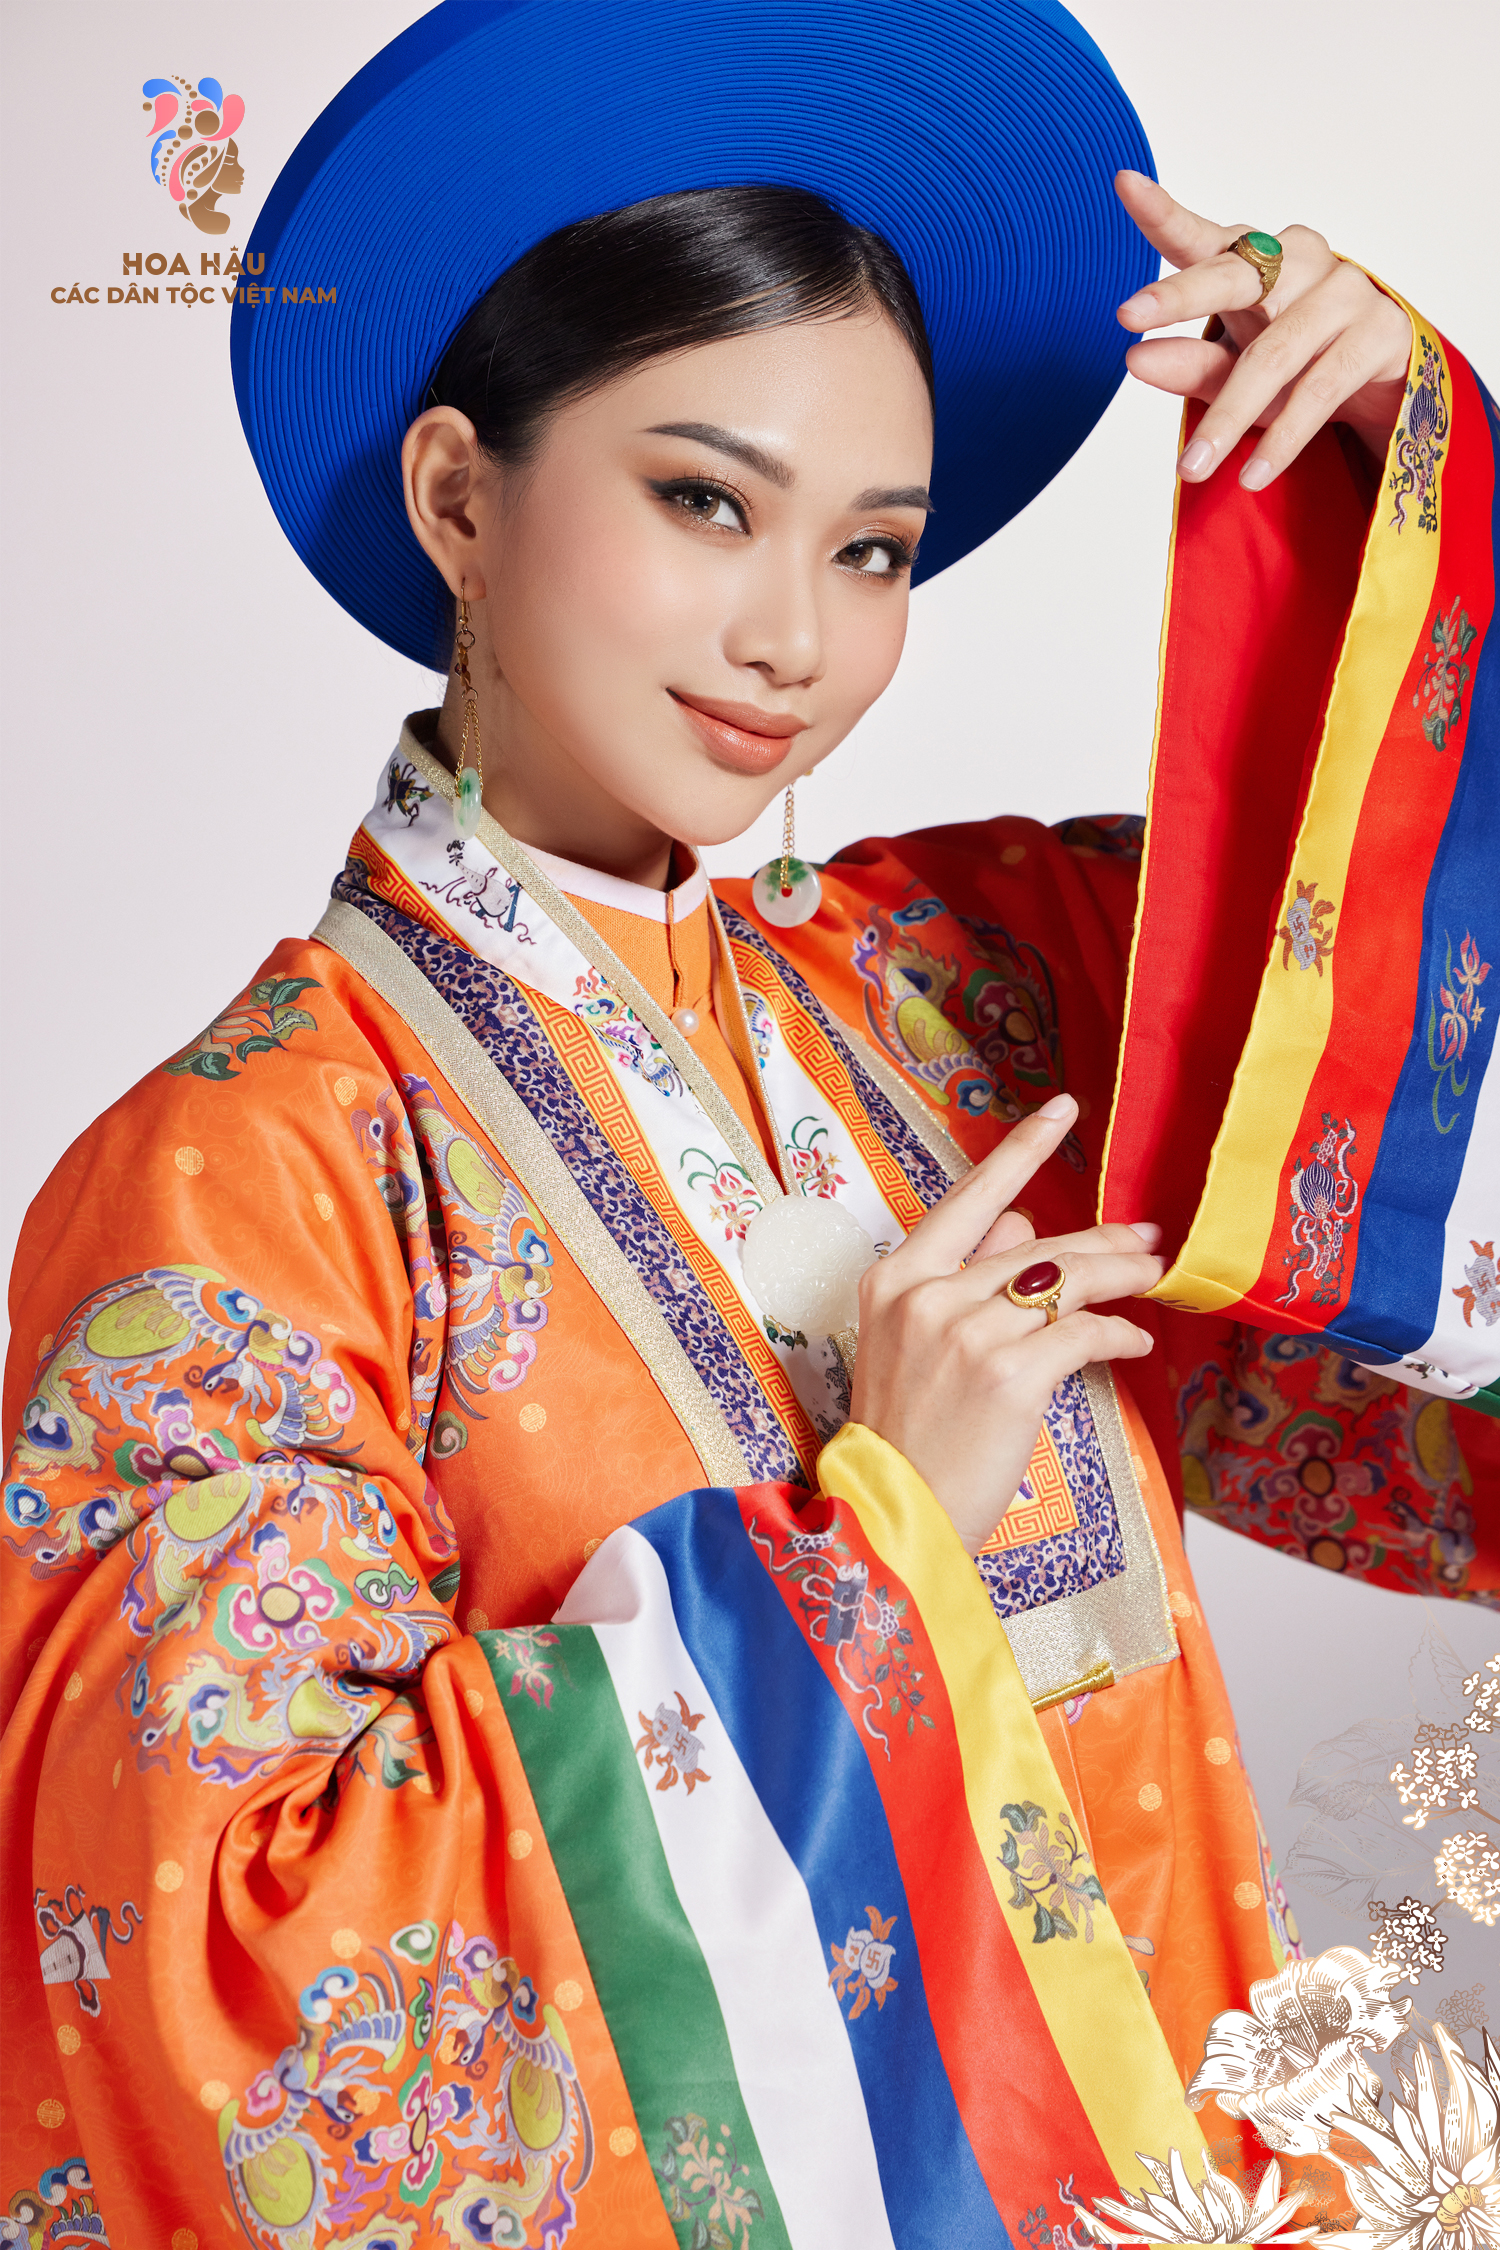 30 thí sinh Hoa hậu các dân tộc Việt Nam duyên dáng trong trang phục truyền thống - Ảnh 6.